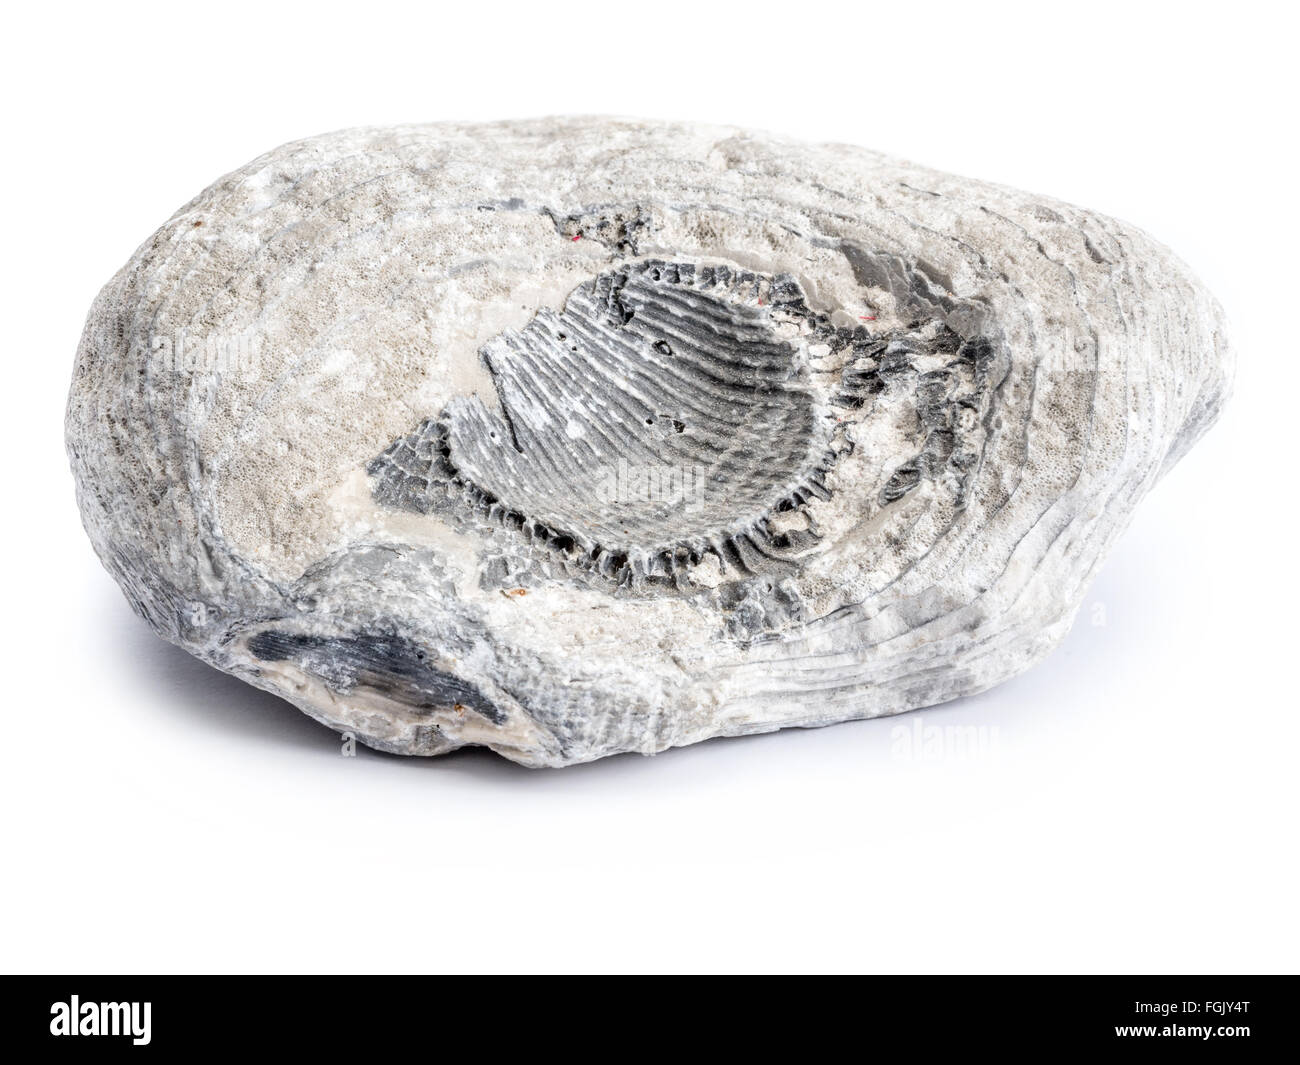 Des fossiles du Crétacé tourné sur fond blanc Banque D'Images